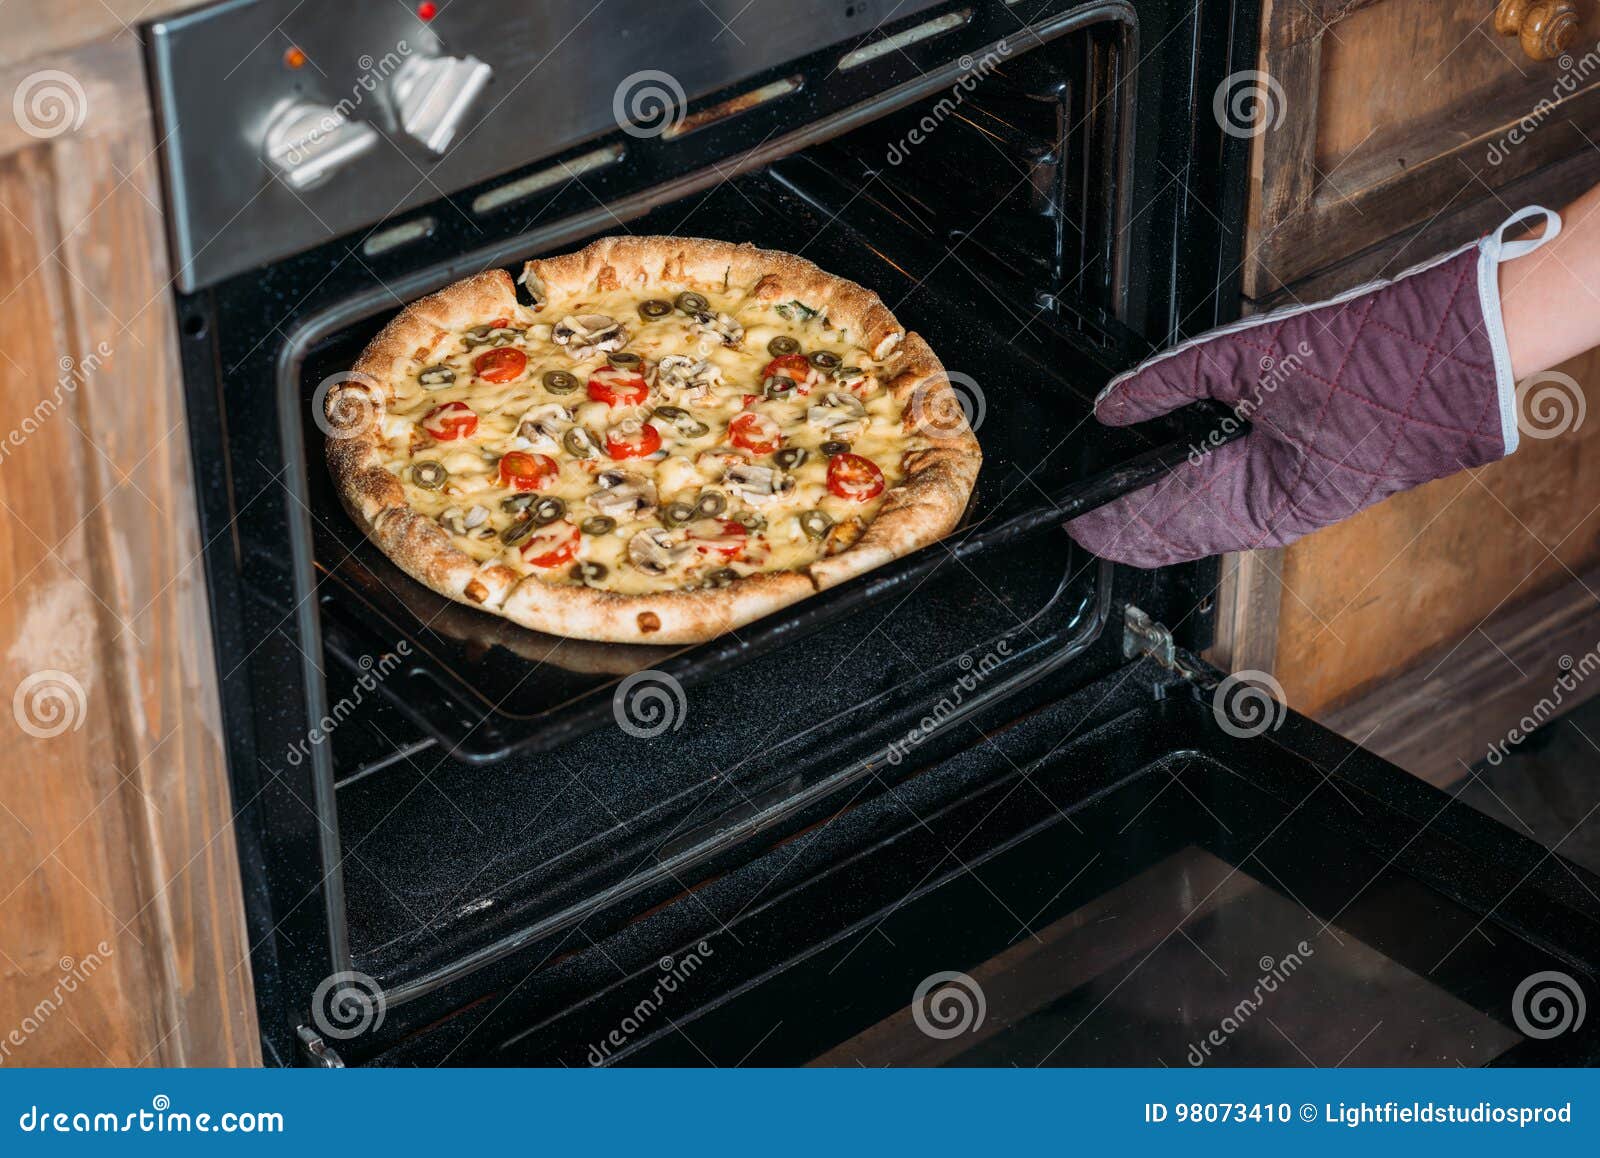 что делать если передержала пиццу в духовке фото 11